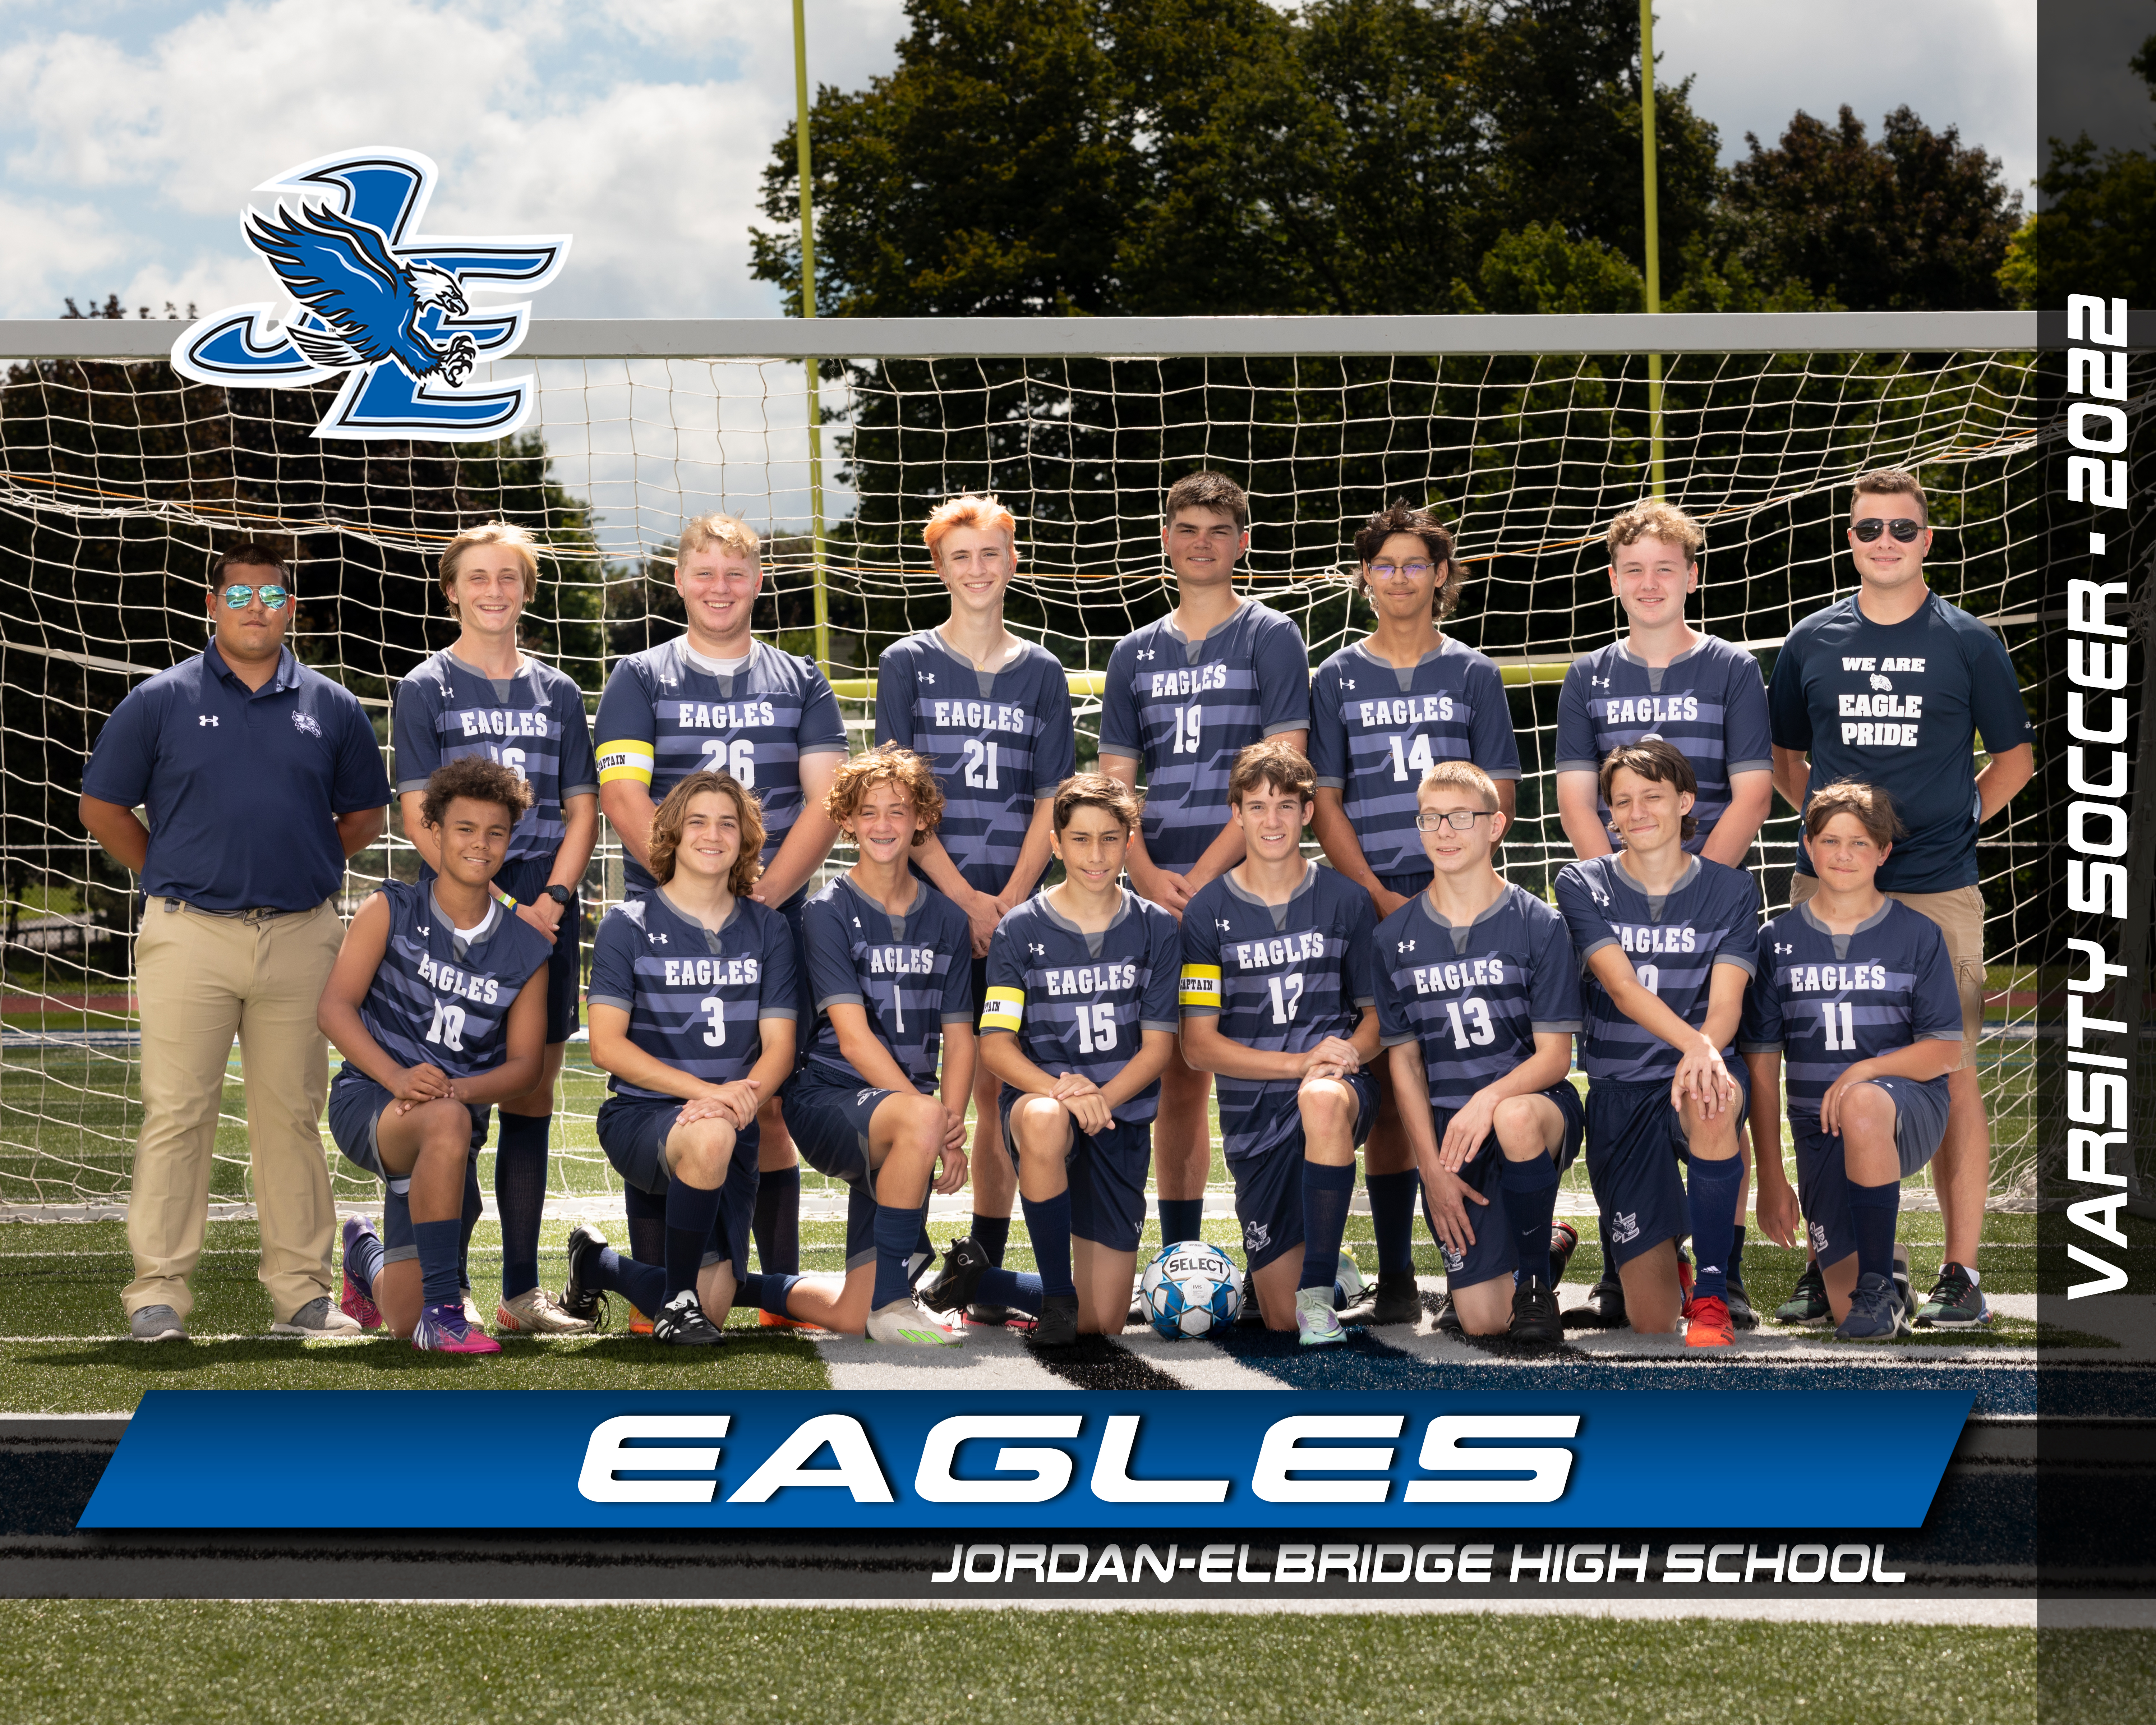 The varsity boys soccer team is a scholar-athlete team